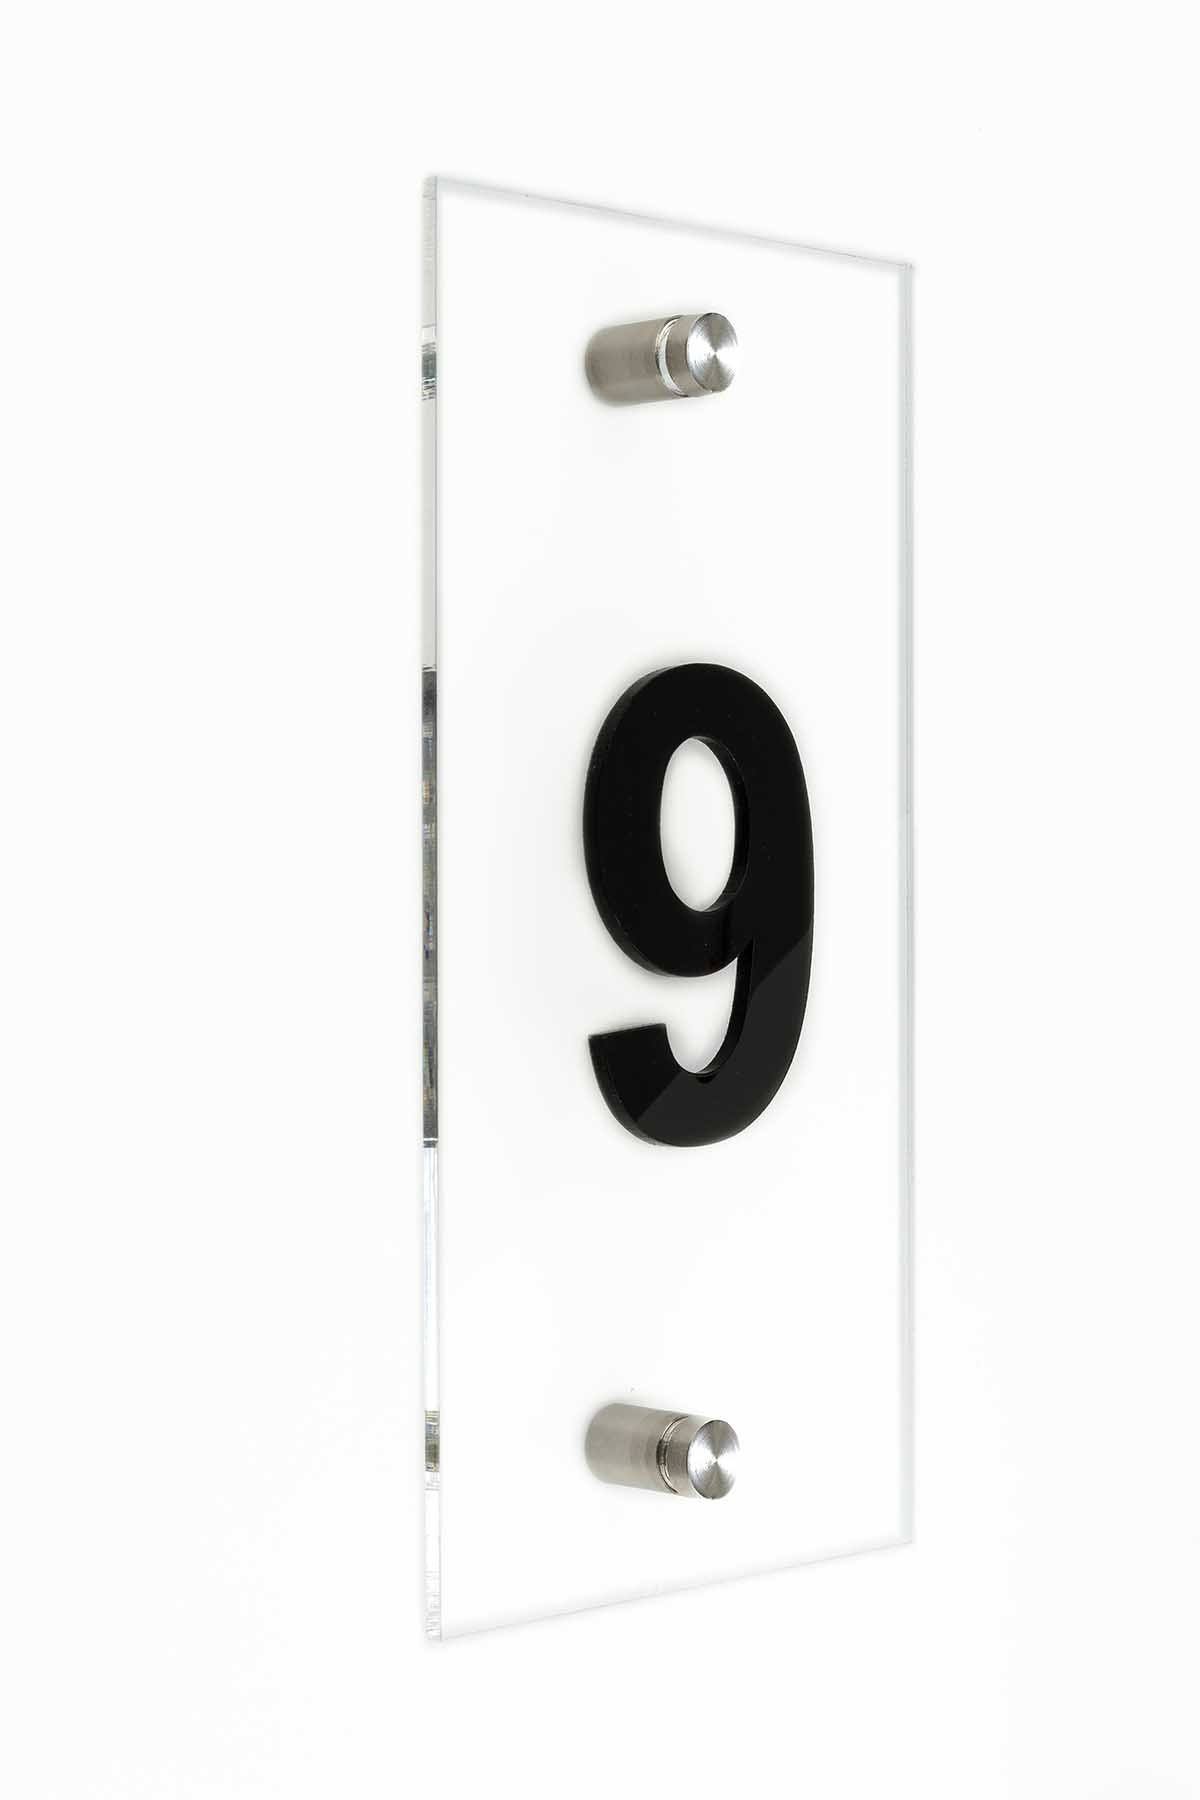 Hotel Acrylic Door Numbers Door Numbers VerticalBsign